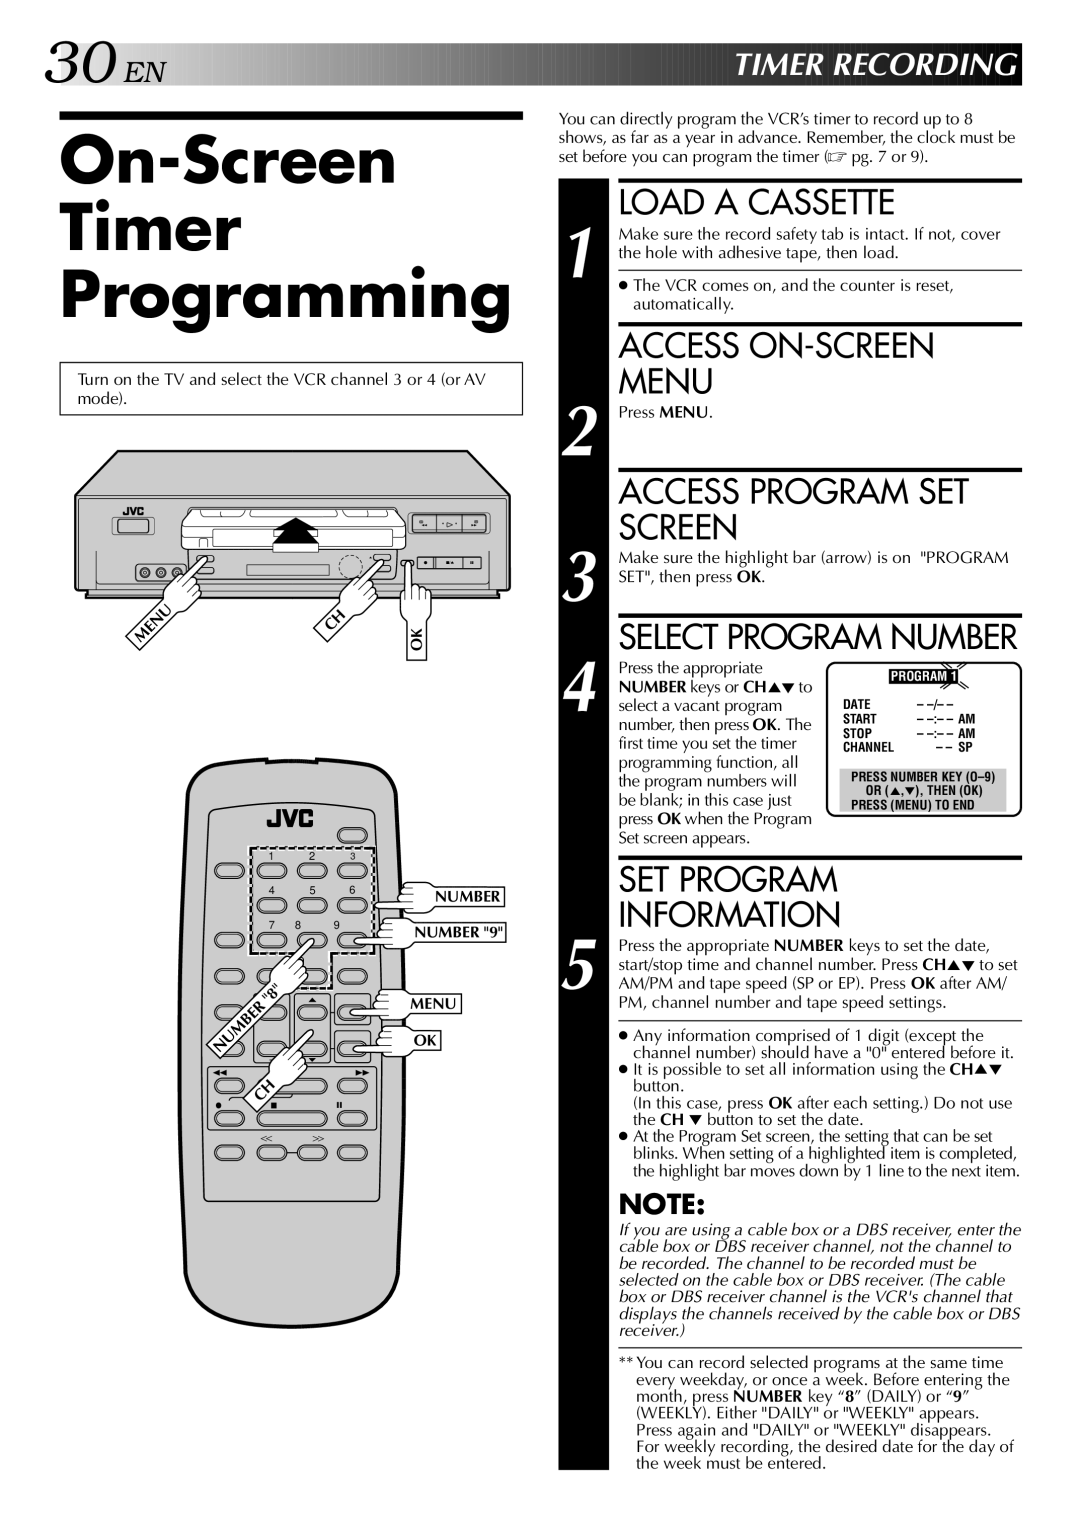 JVC HR-J642U manual On-Screen Timer Programming, Access Program SET, Information, EN Timer Recording, Select Program Number 